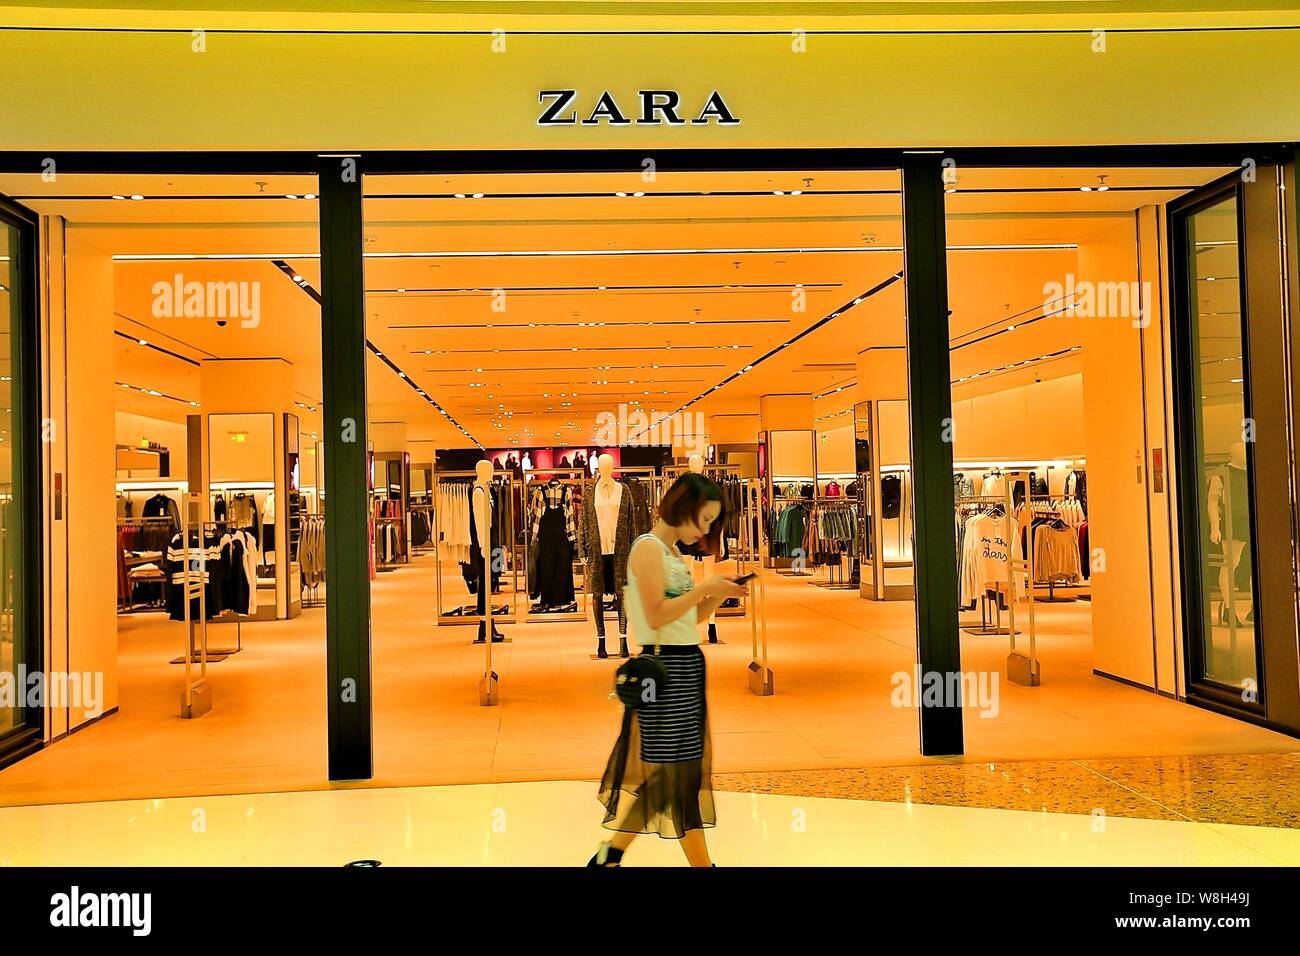 zara south city mall